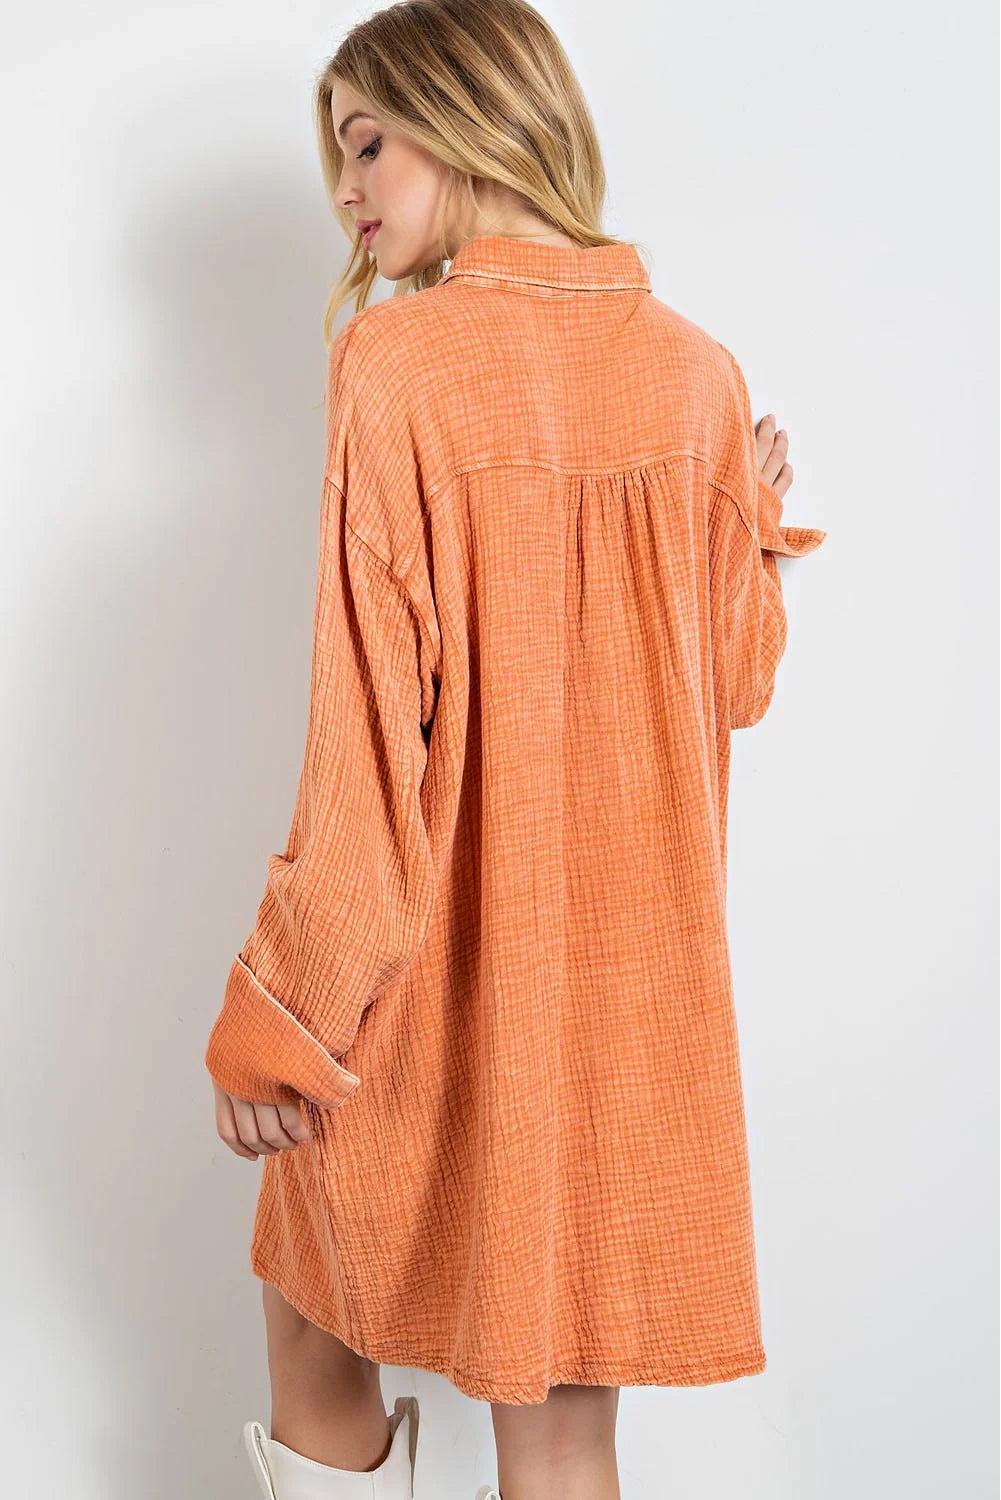 Narančasta velika košulja s dva džepa na prsima, naborana